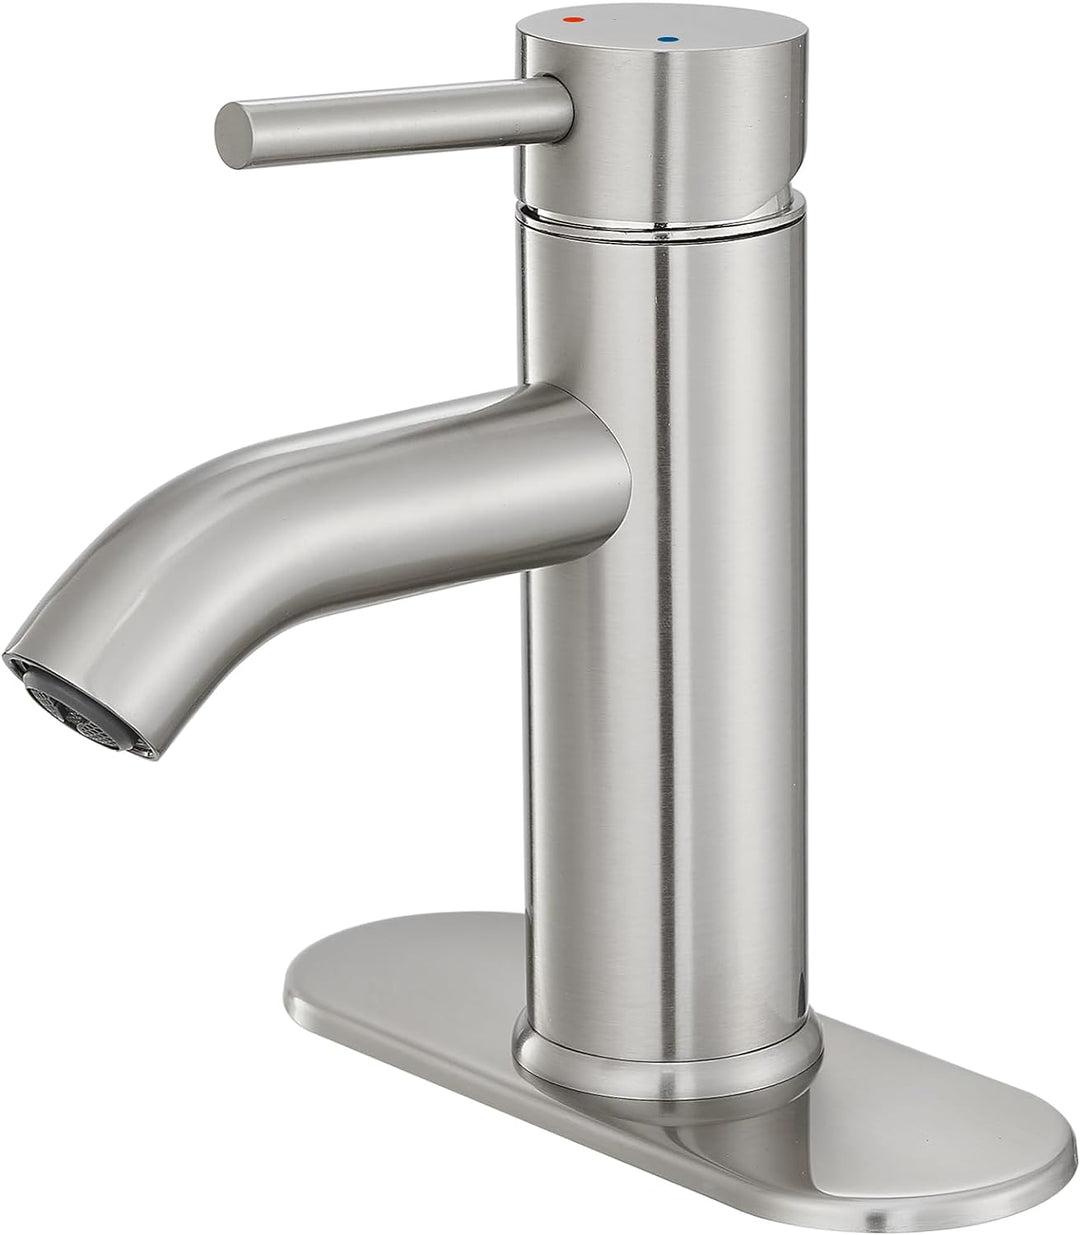 Bathroom Faucet Brushed Nickel One-Handle, Modern One Hole Bathroom Sink Faucet Lavatory Faucet with Deck